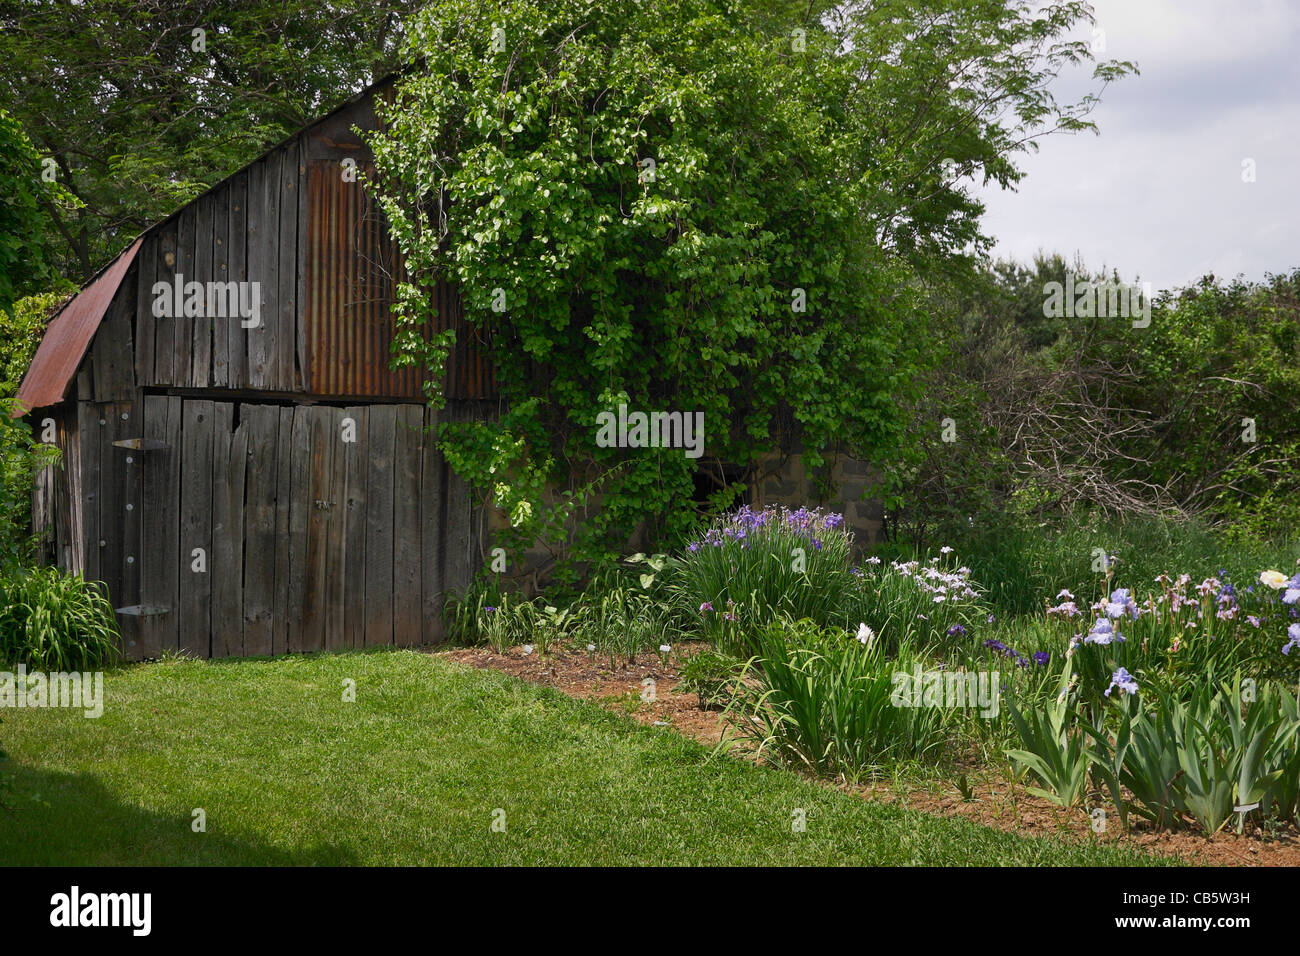 An iris garden in Herndon, Virginia. Stock Photo